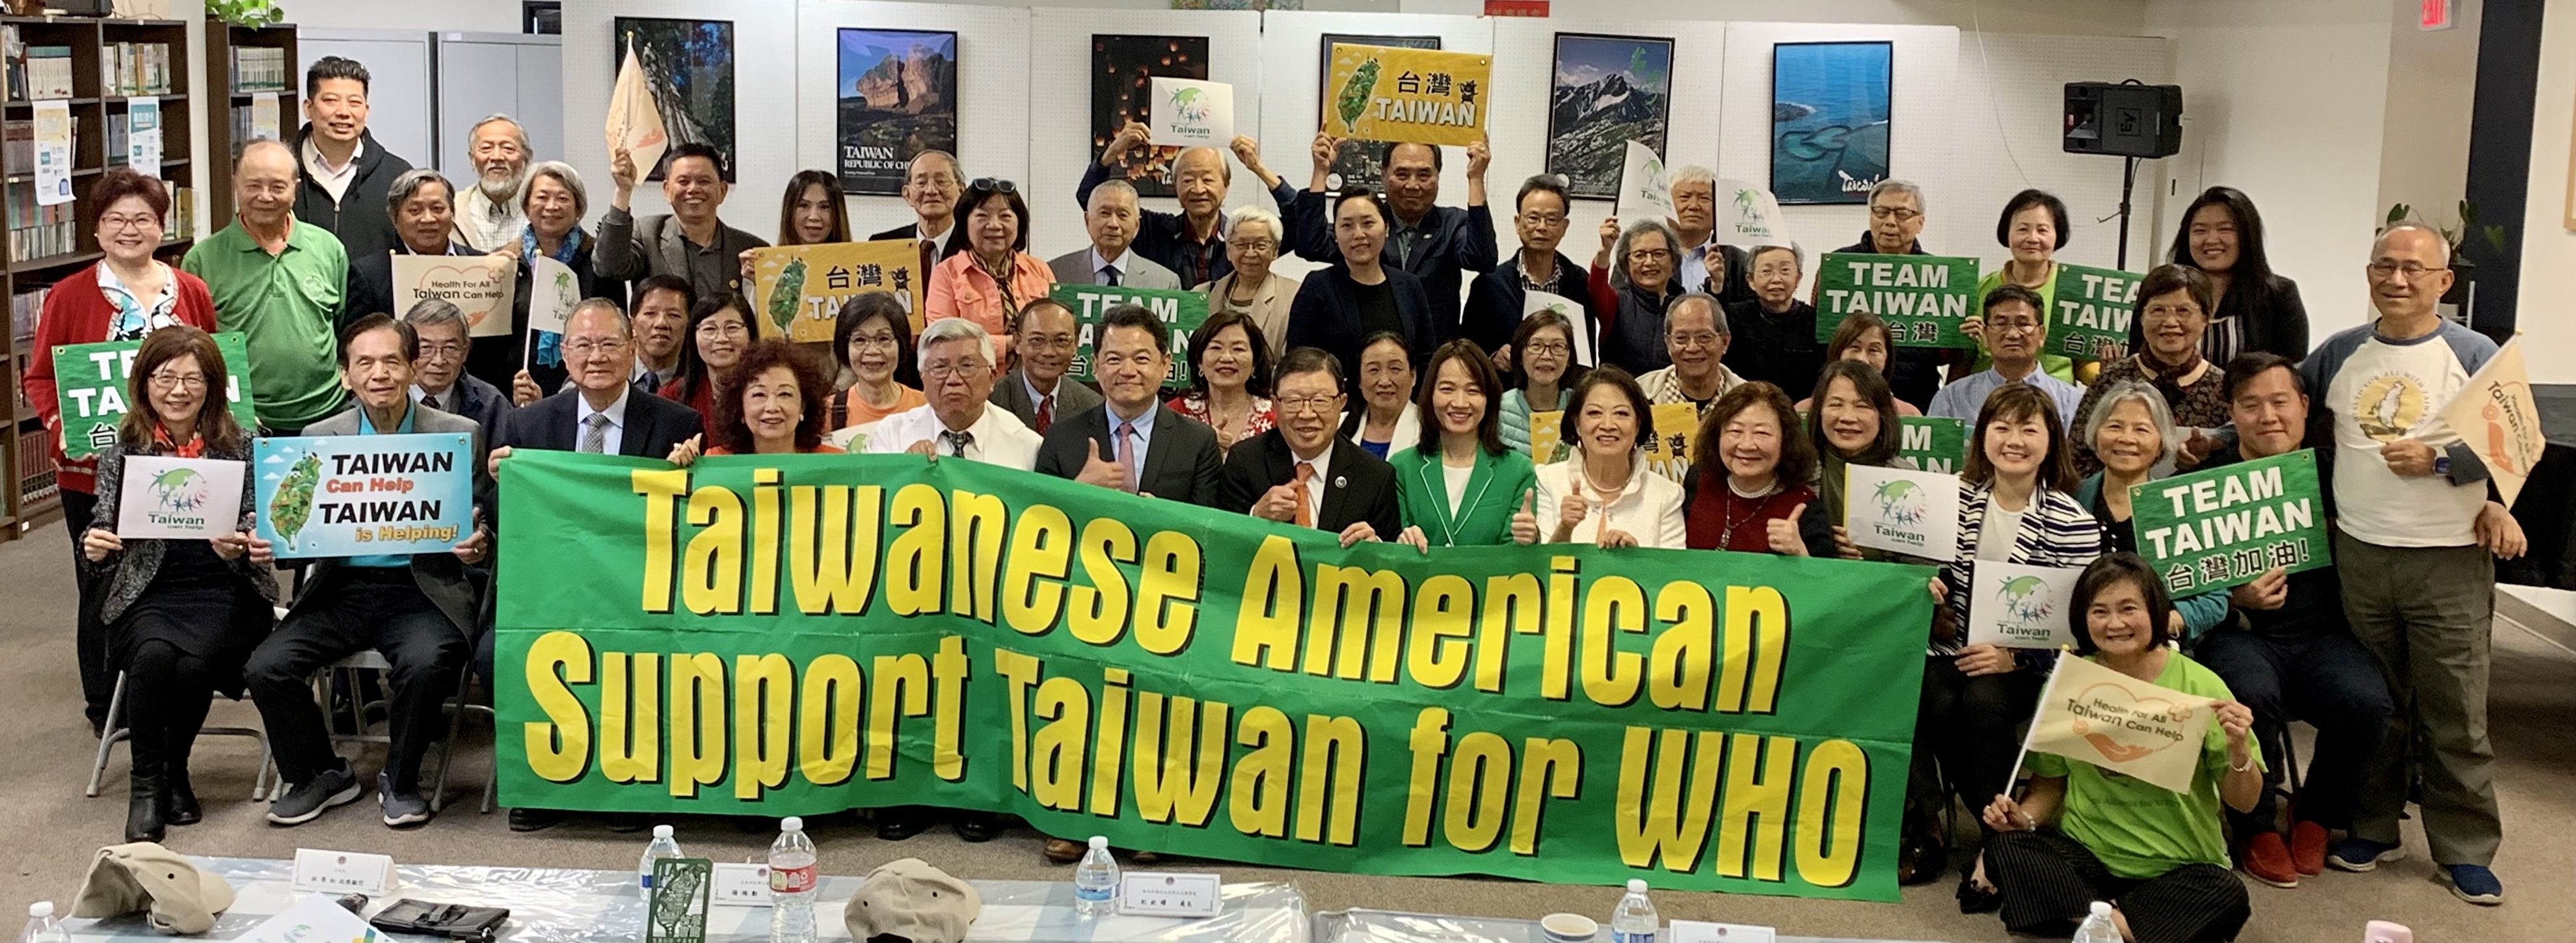 橙縣、聖地牙哥僑界強烈聲援台灣加入世衛組織